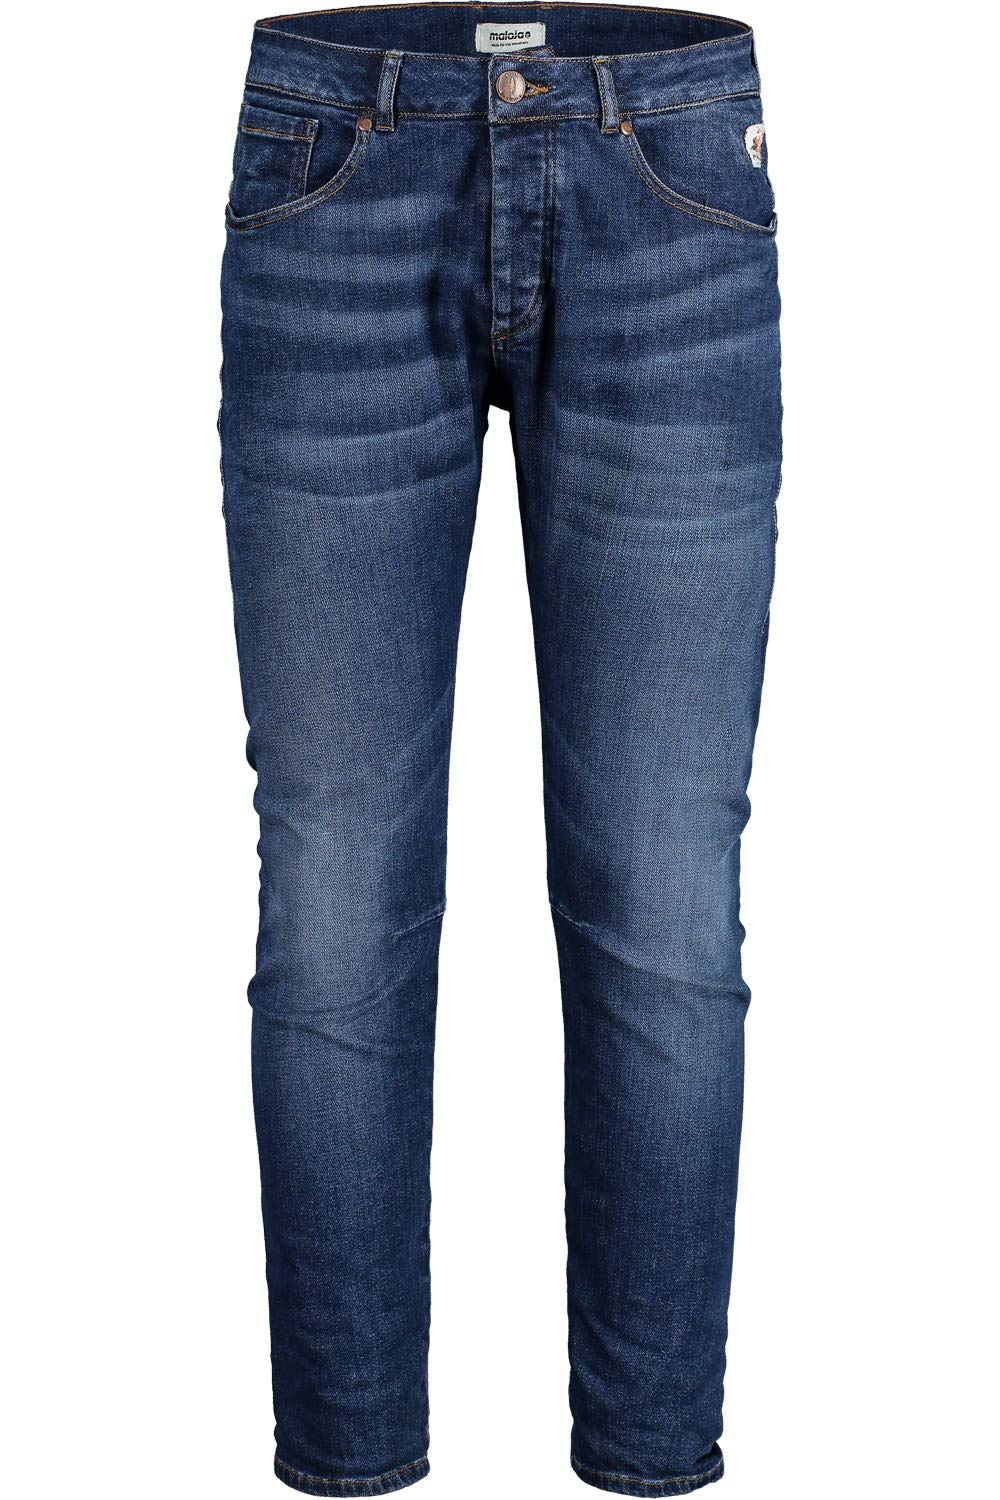 Maloja M Damphum. Jeans Blau - Stylische lässige Herren Streetwear Jeans, Größe W30 - L32 - Farbe Denim Blue